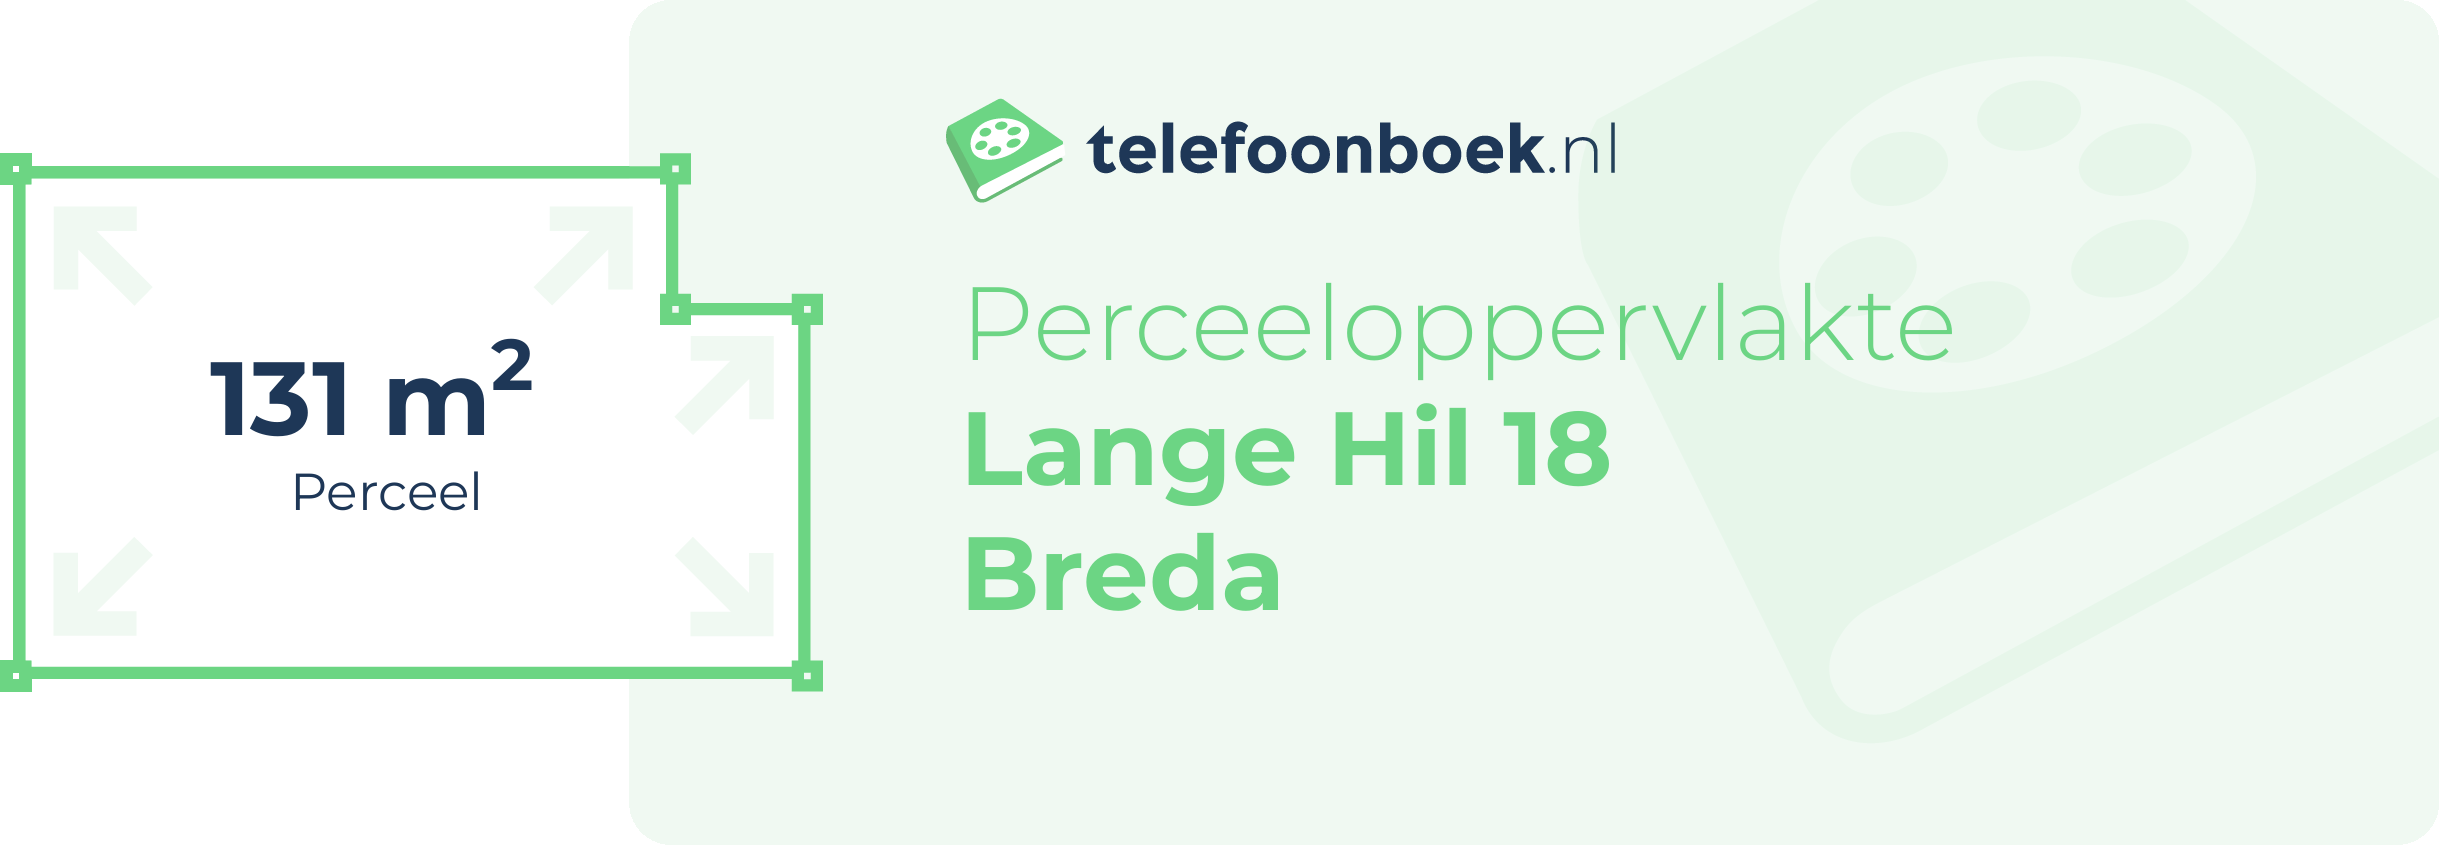 Perceeloppervlakte Lange Hil 18 Breda